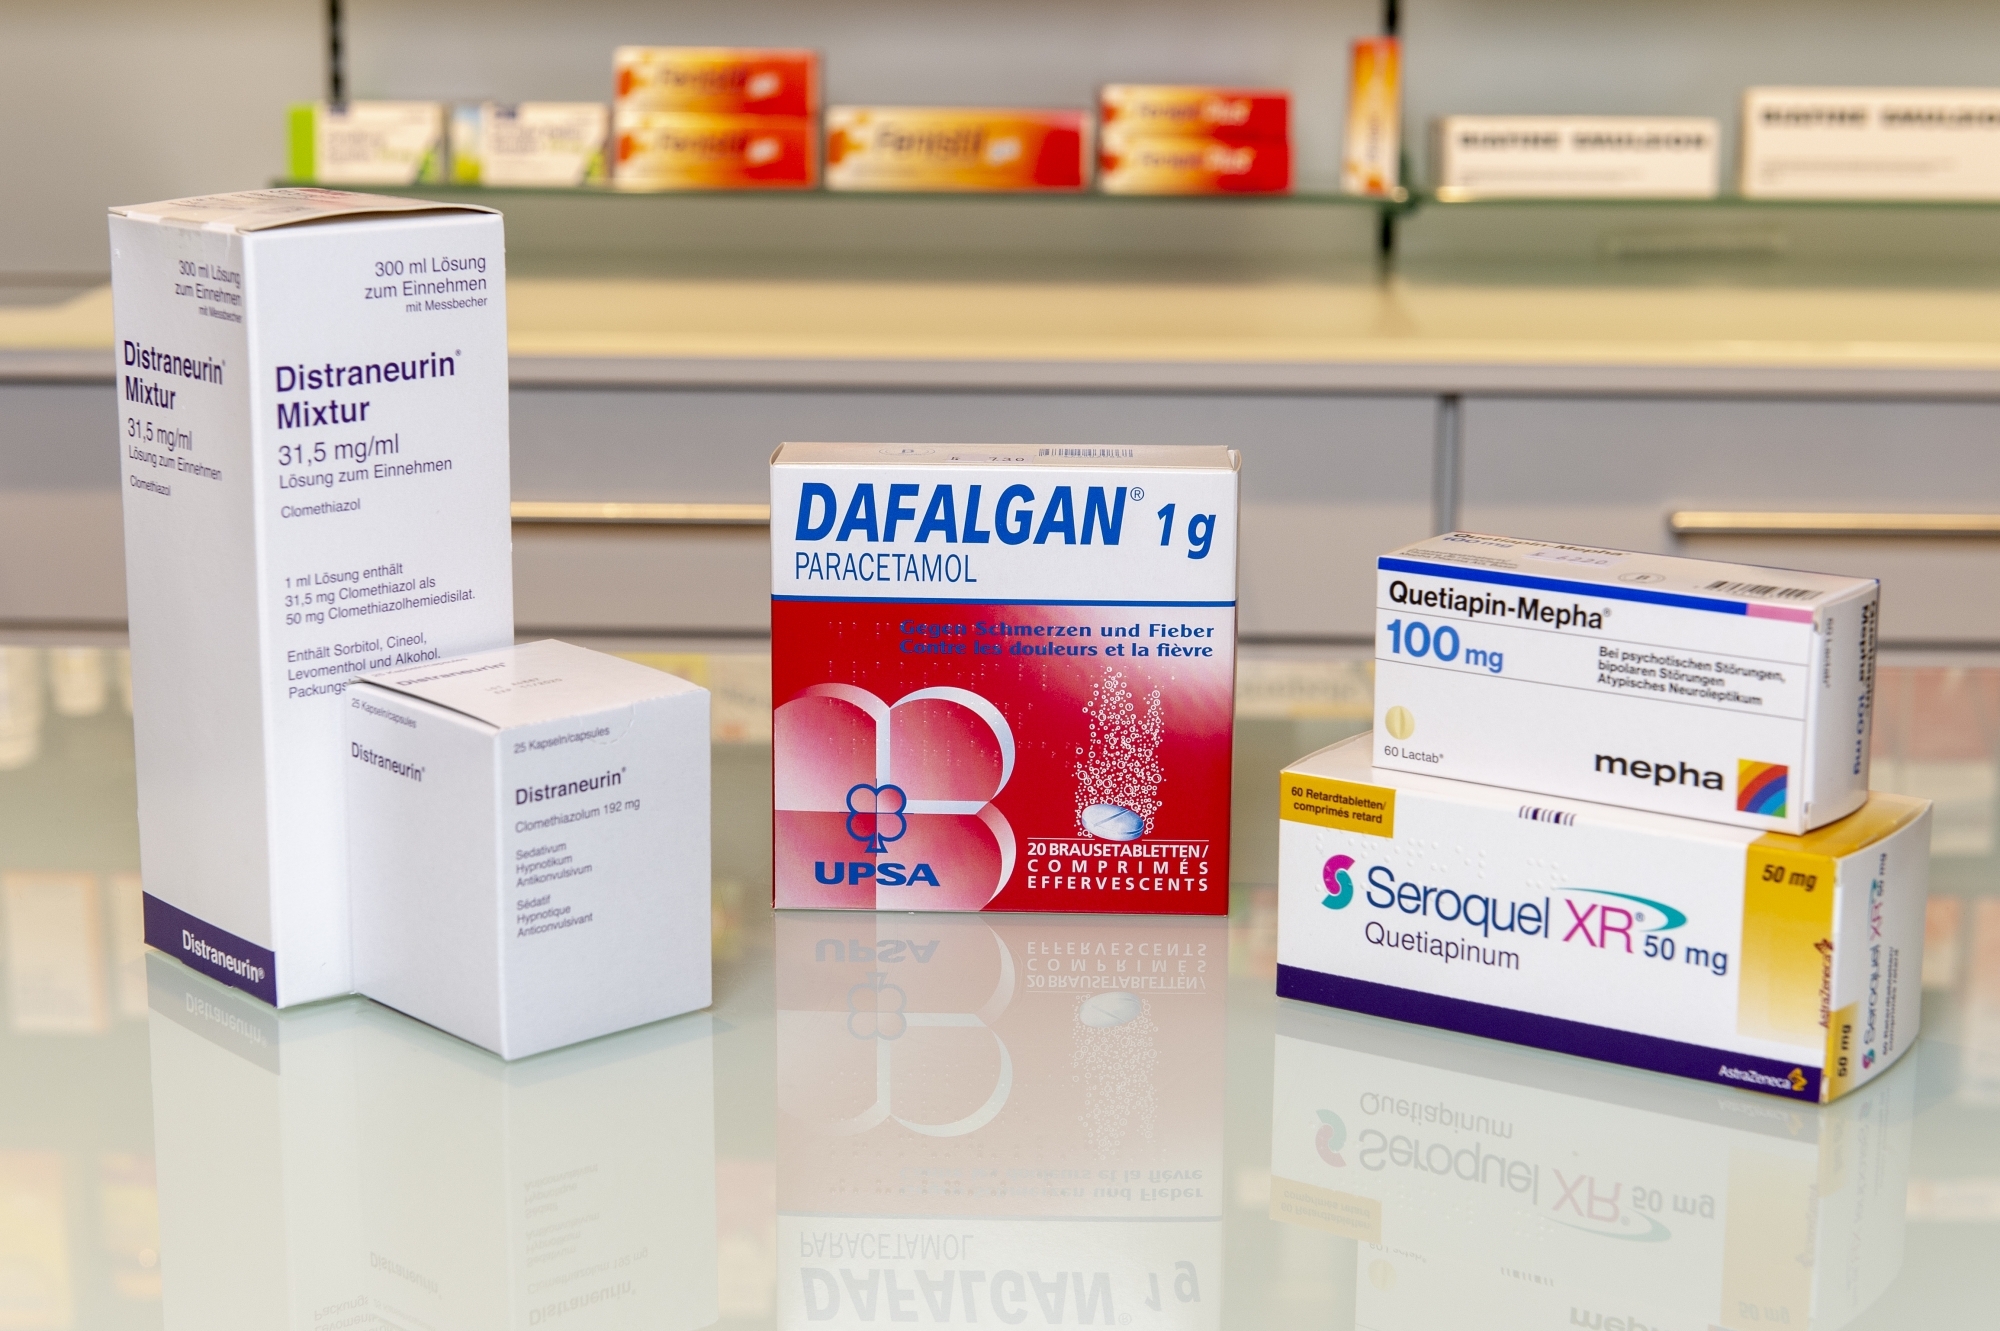 Trois médicaments, le Seroquel, la Distraneurin et le Dafalgan, figurent sur le podium des médicaments les plus attribués dans les homes du canton. Parmi eux, deux servent à calmer les résidents.